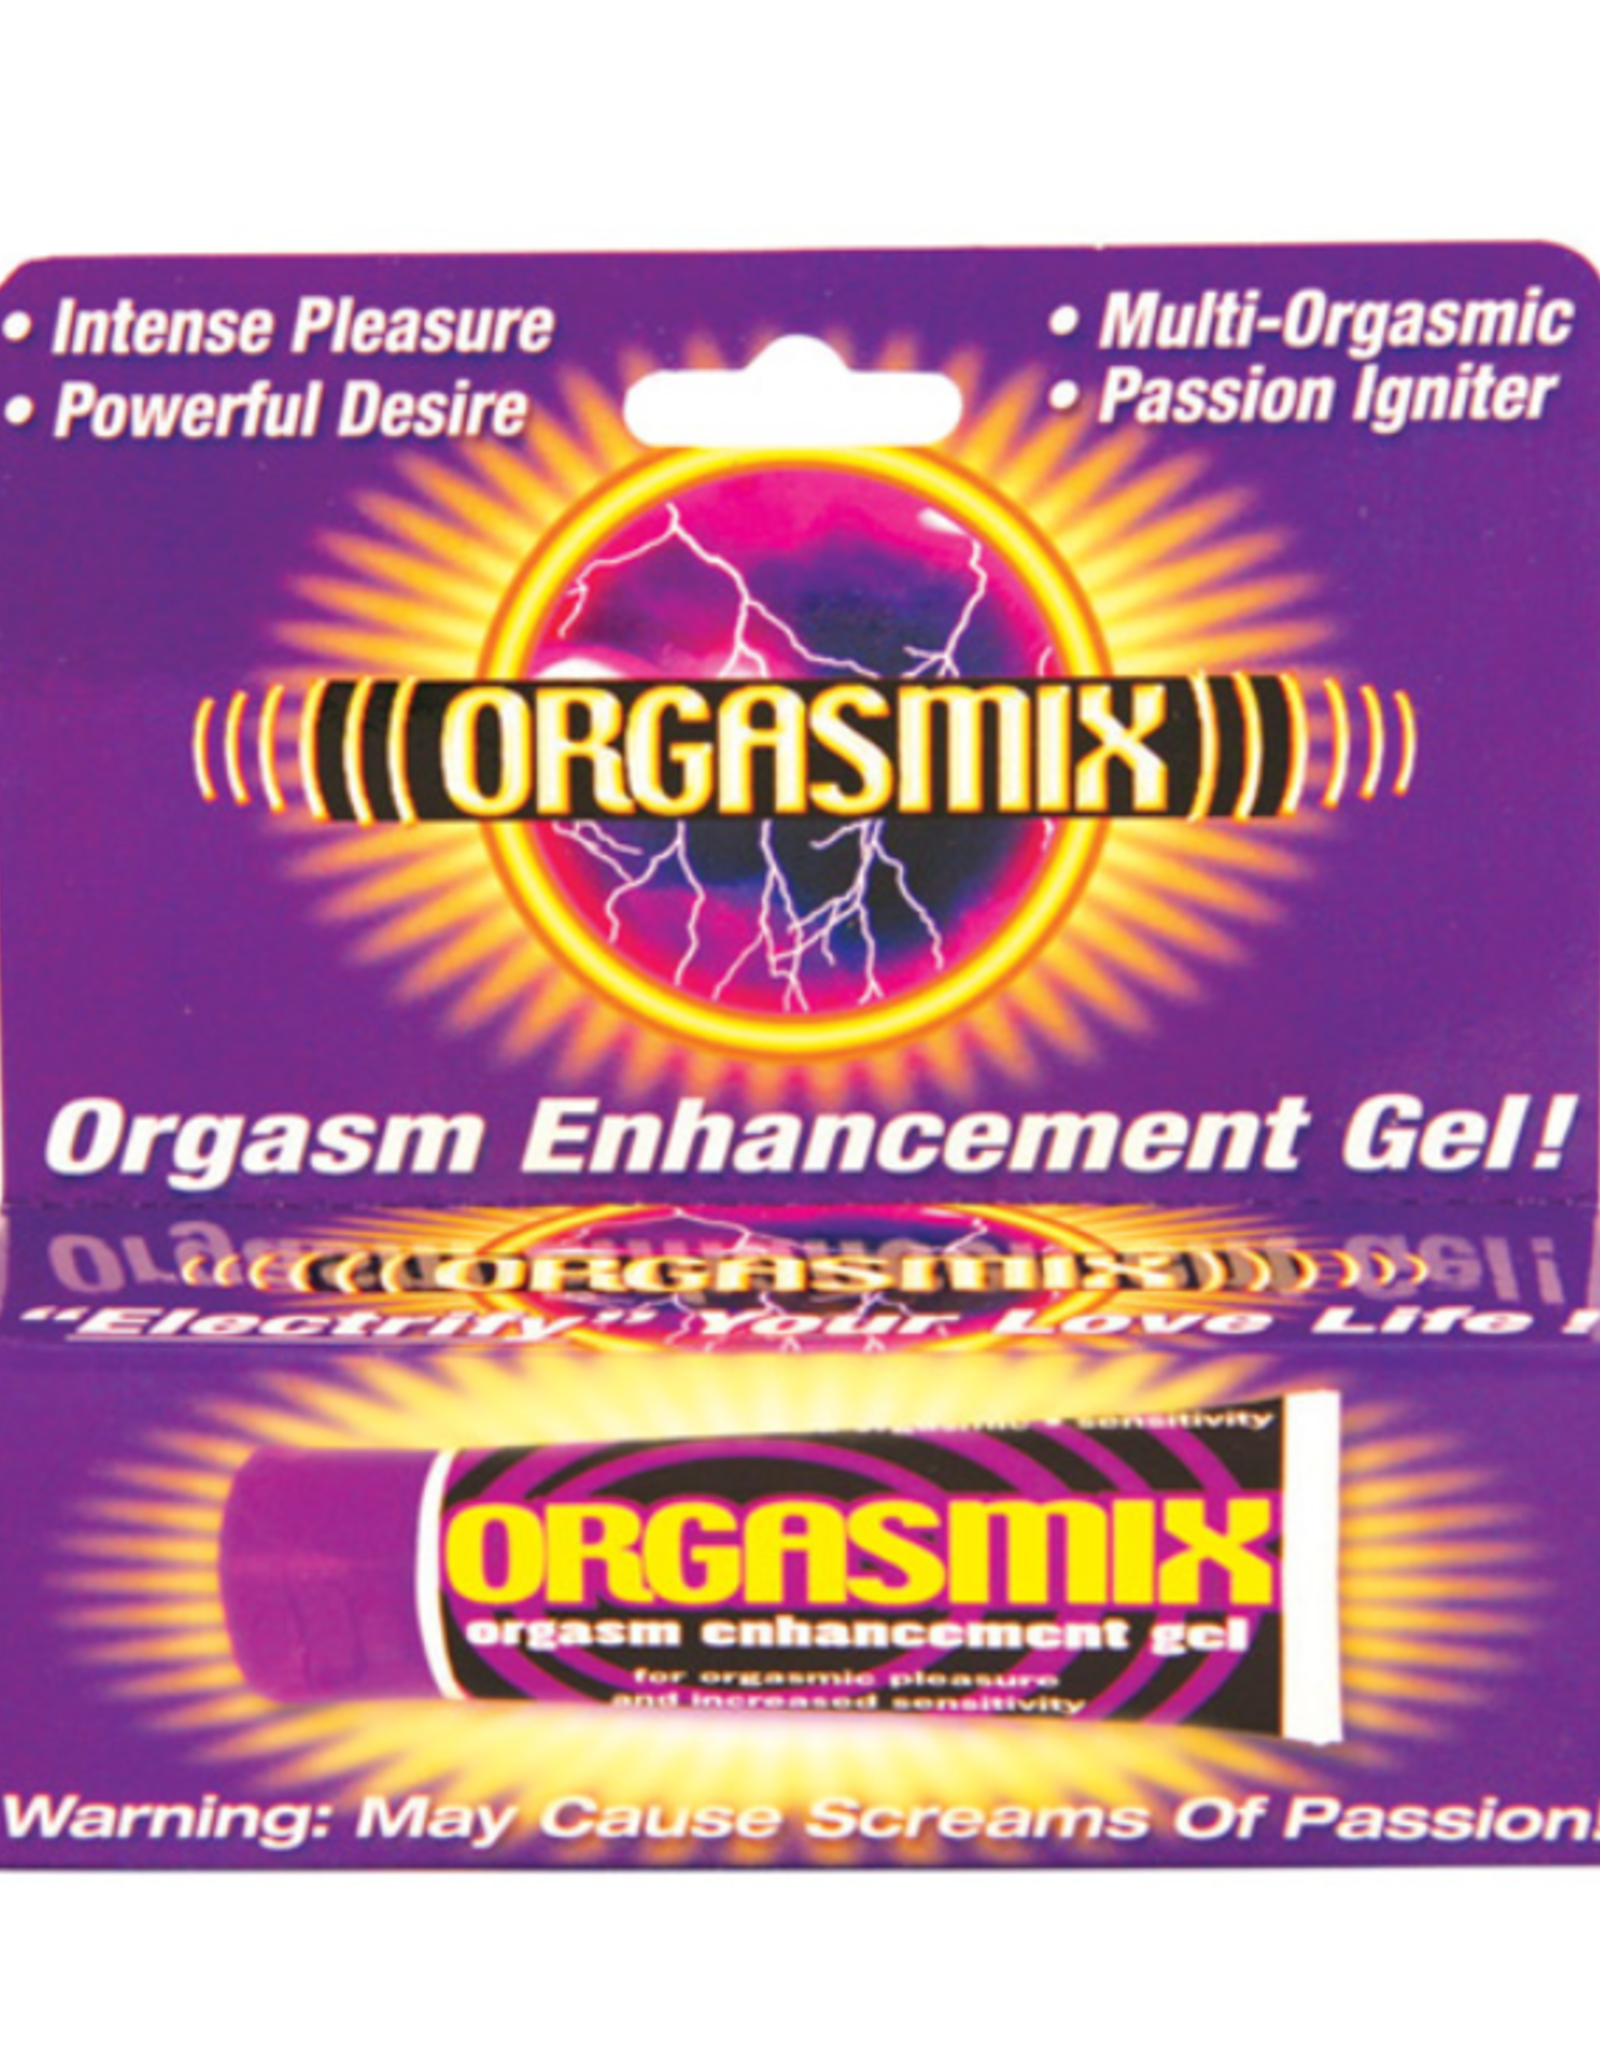 Hott Products Orgasmix Orgasm Enhancing Gel 1oz